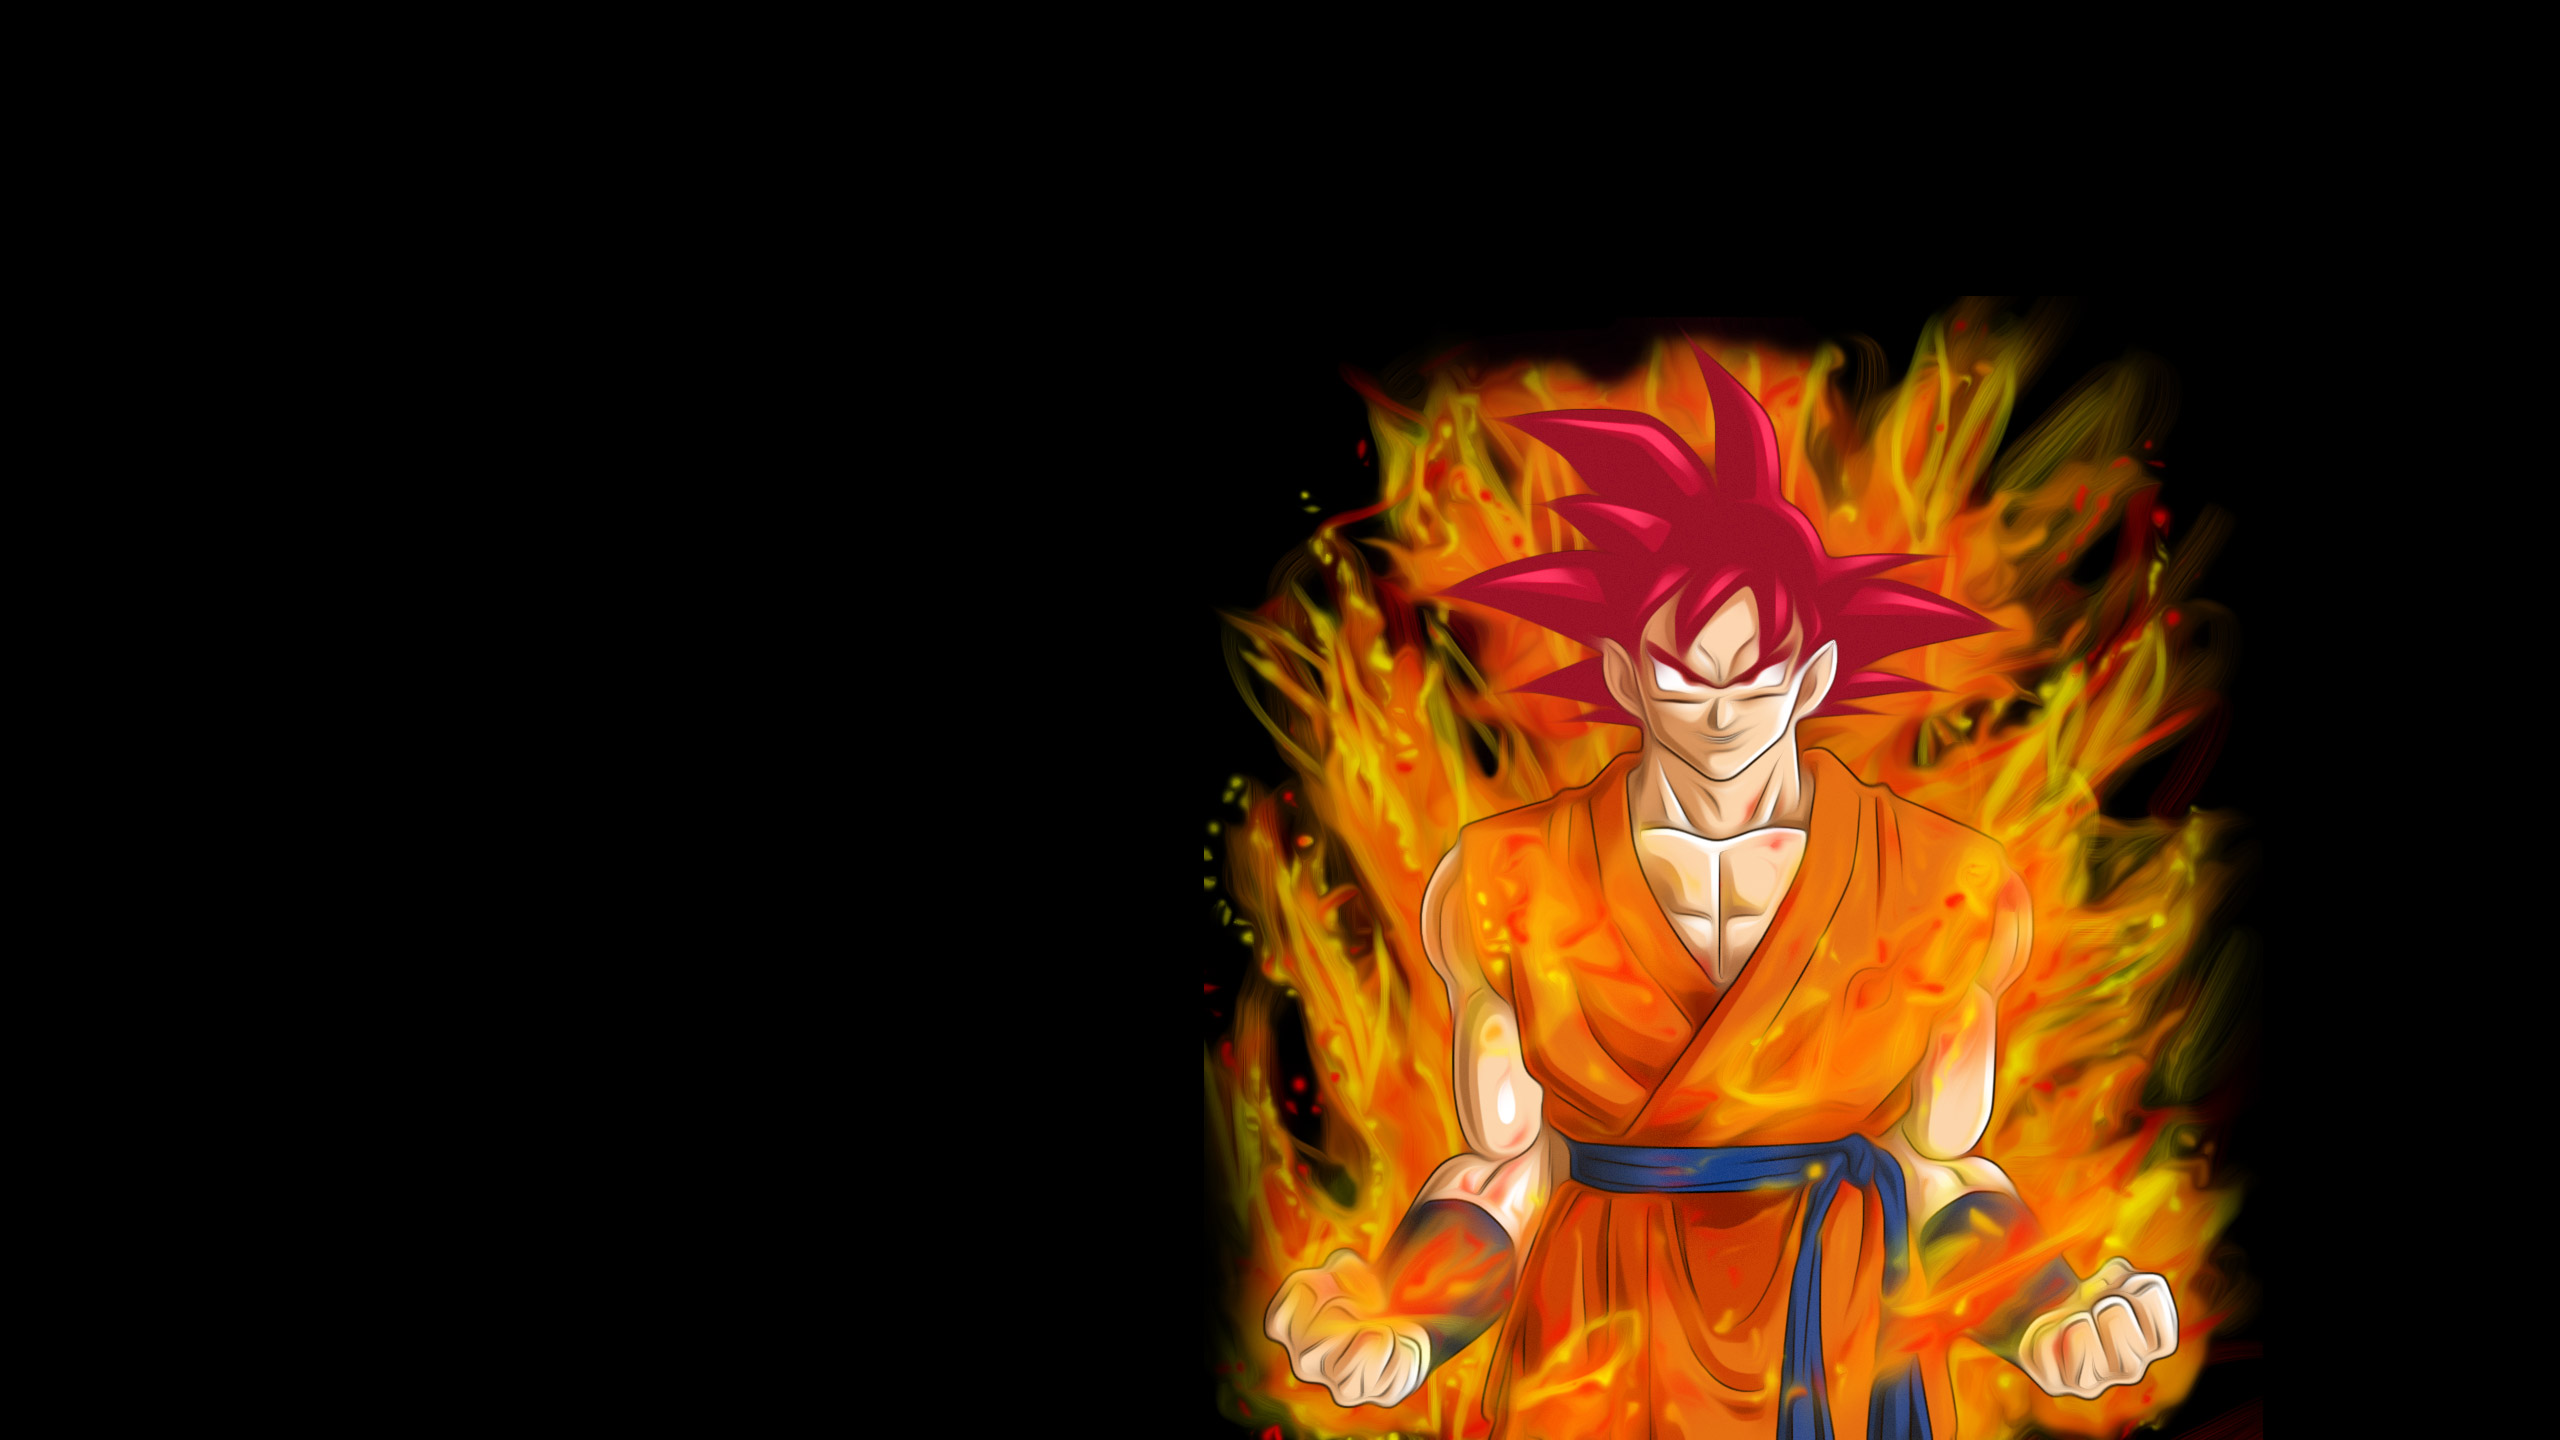 Dragon Ball Super Wallpaper 1080p - Goku , HD Wallpaper & Backgrounds